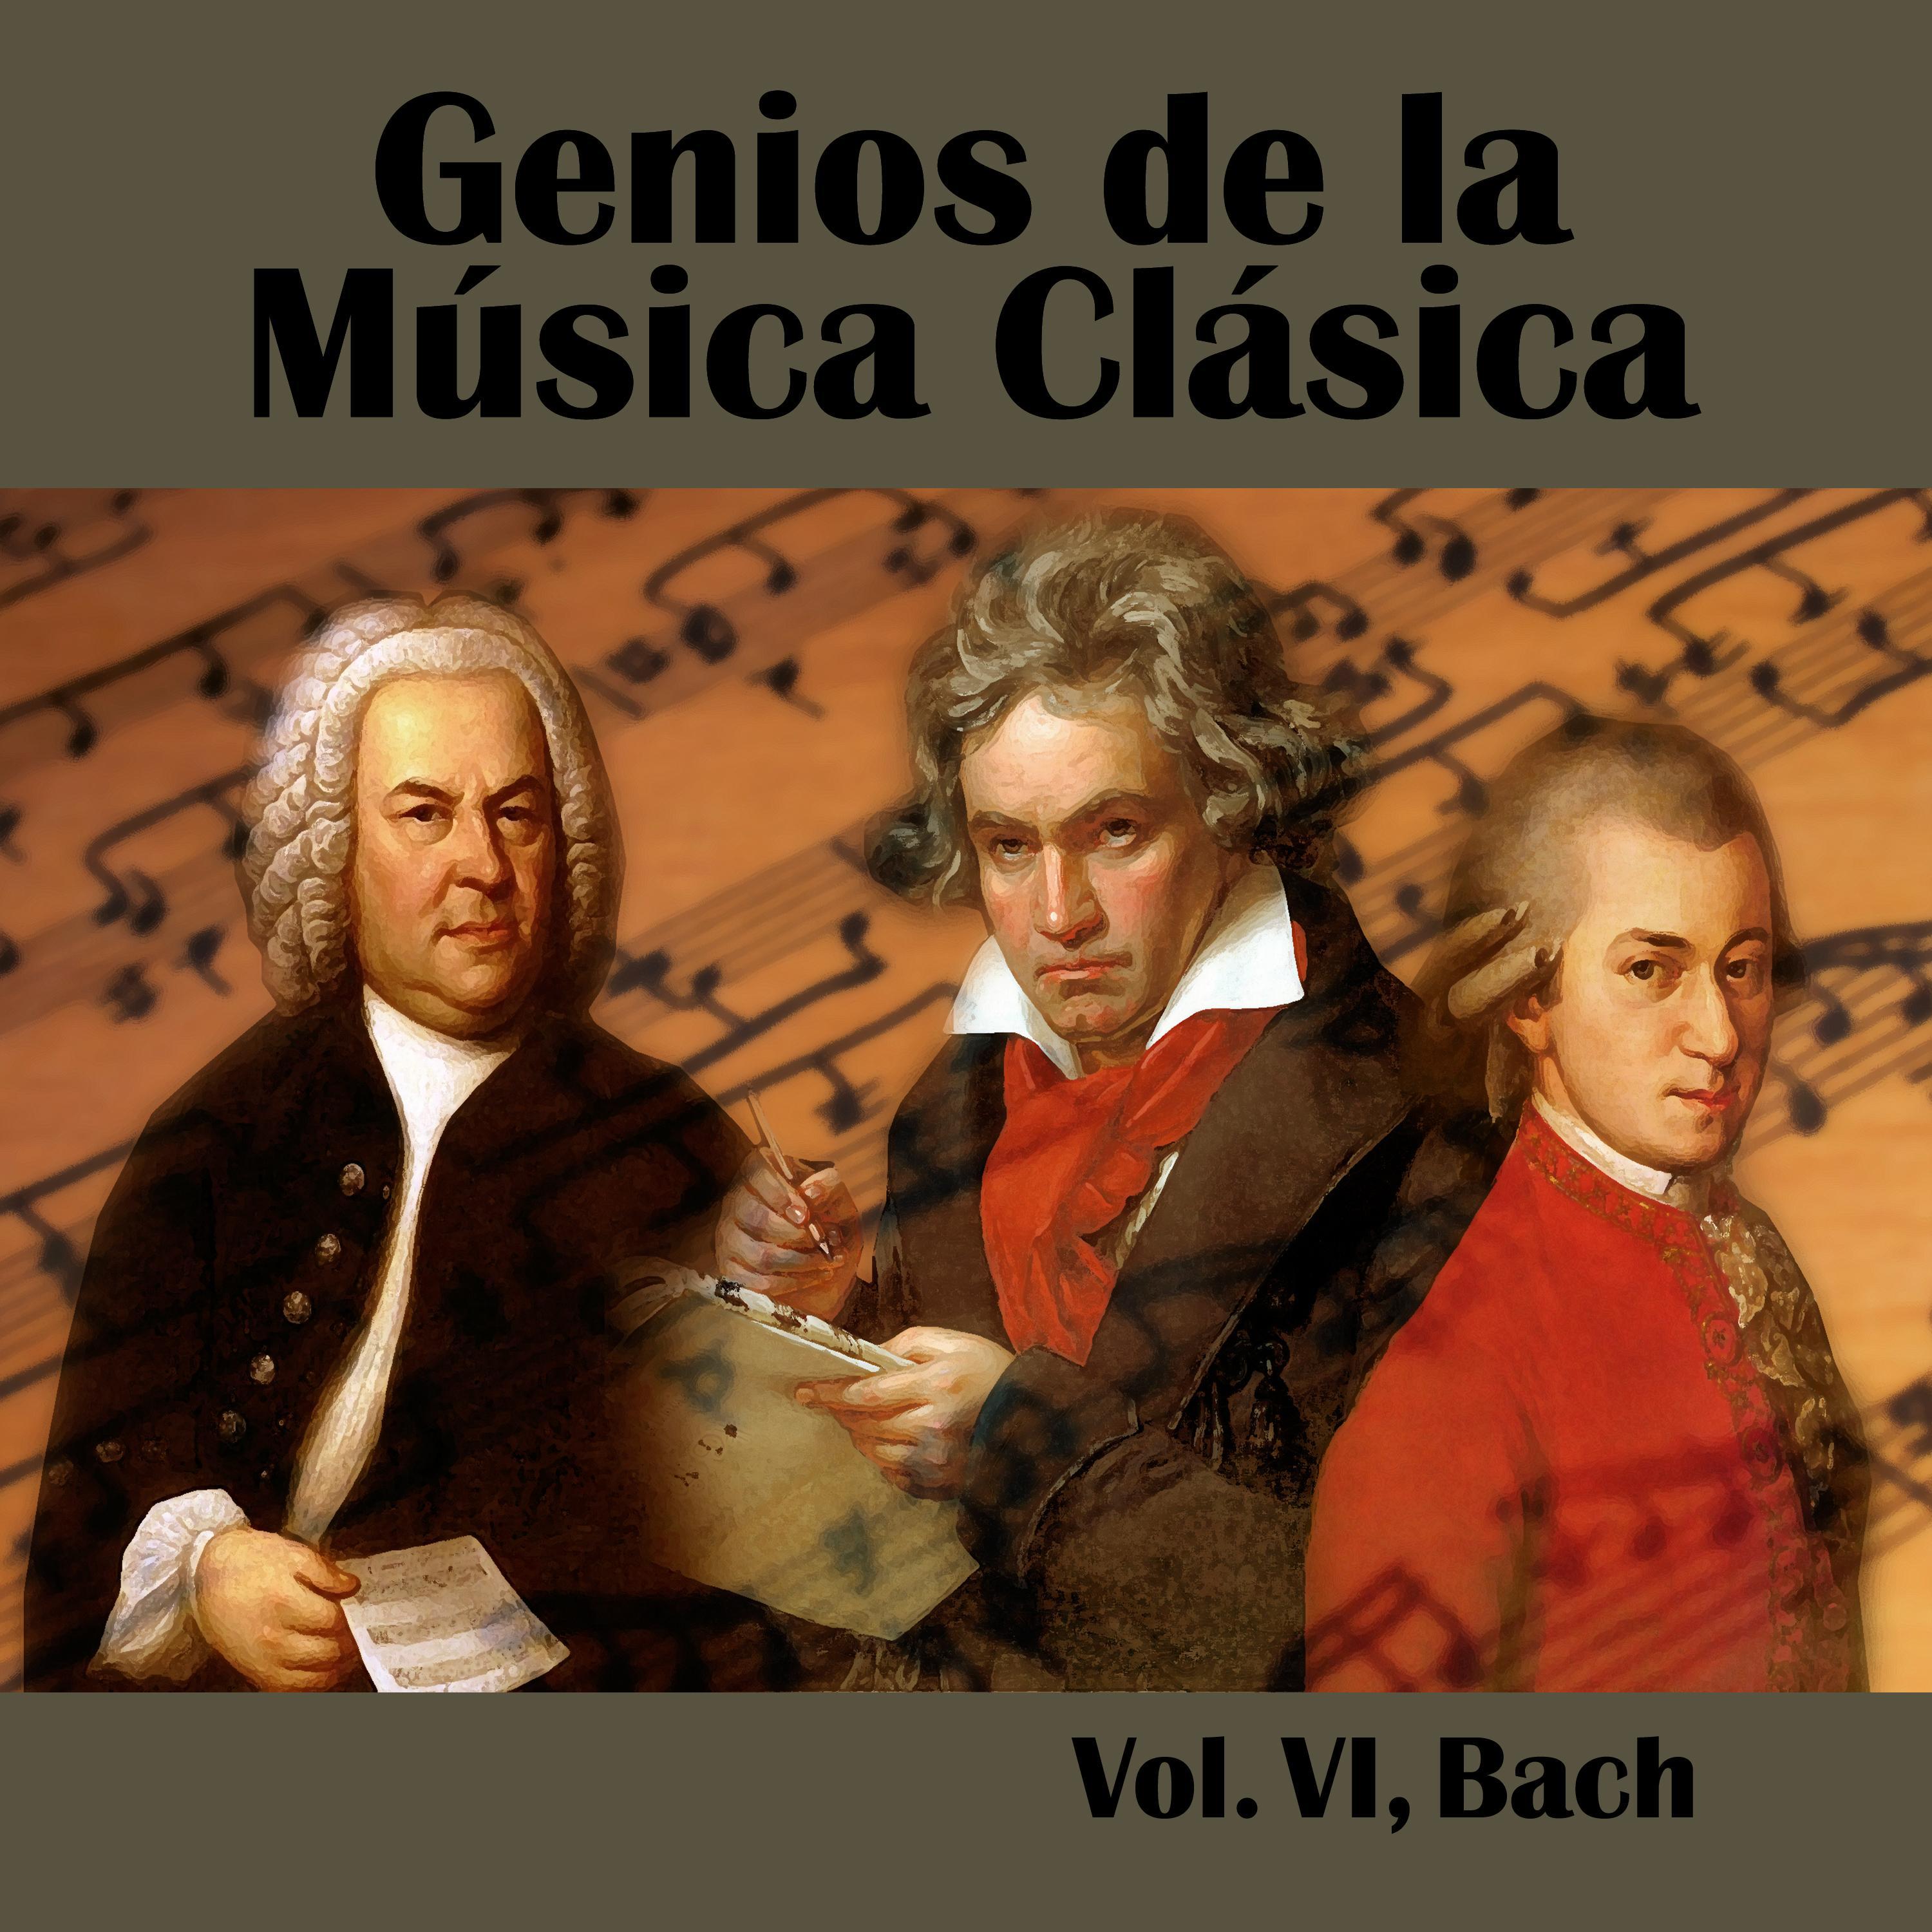 Genios de la Mu sica Cla sica Vol. VI, Bach